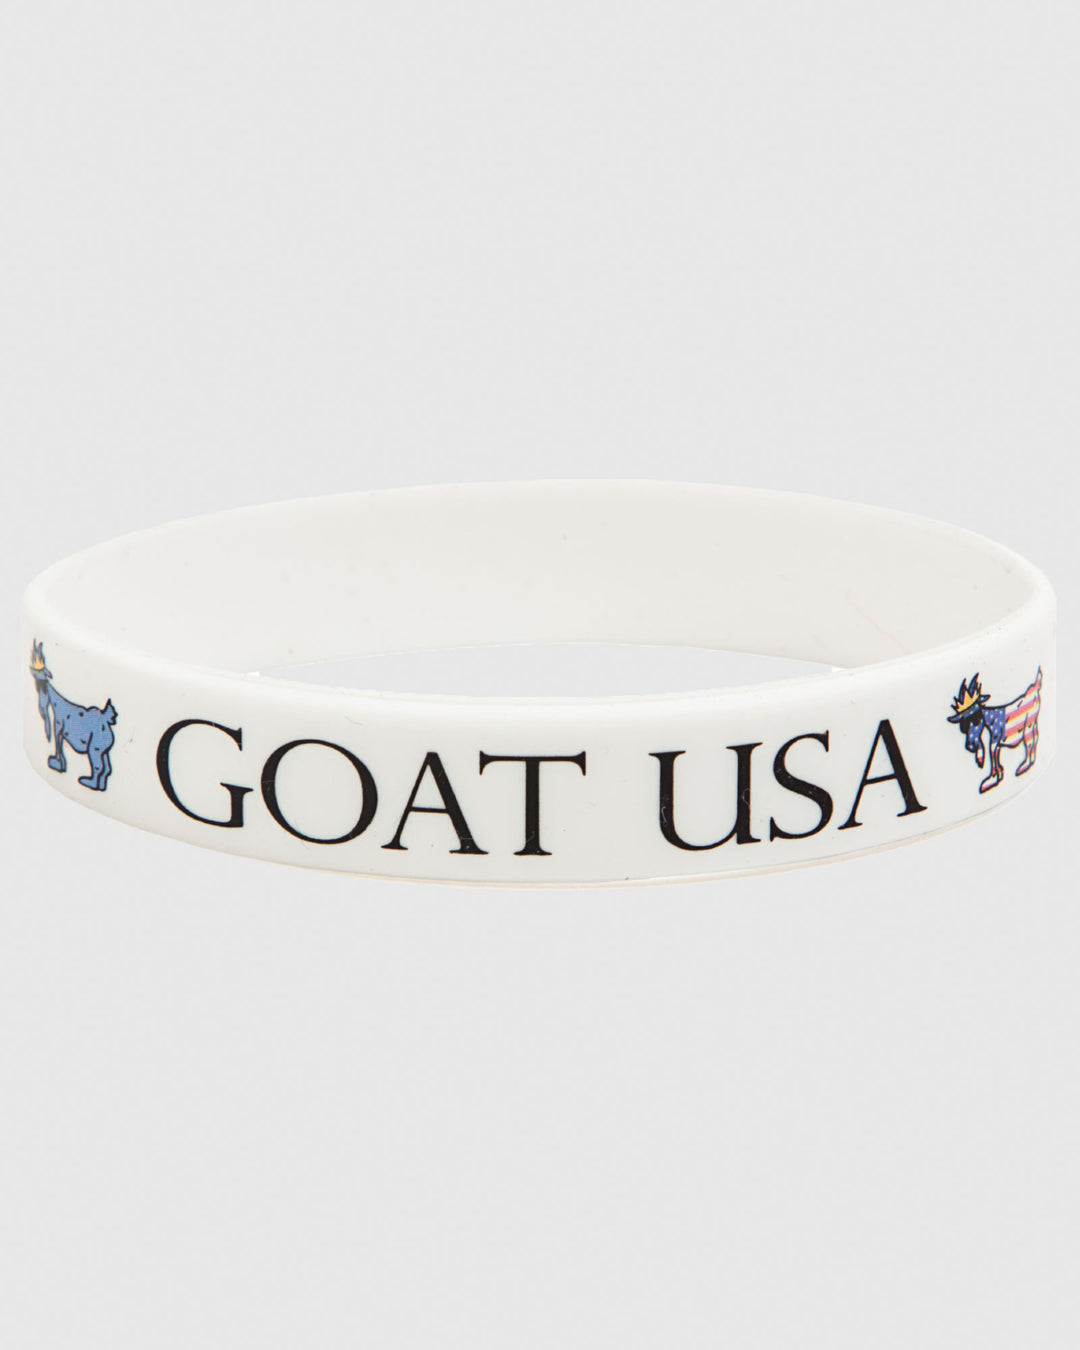 White silicone wristband that says "GOAT USA"